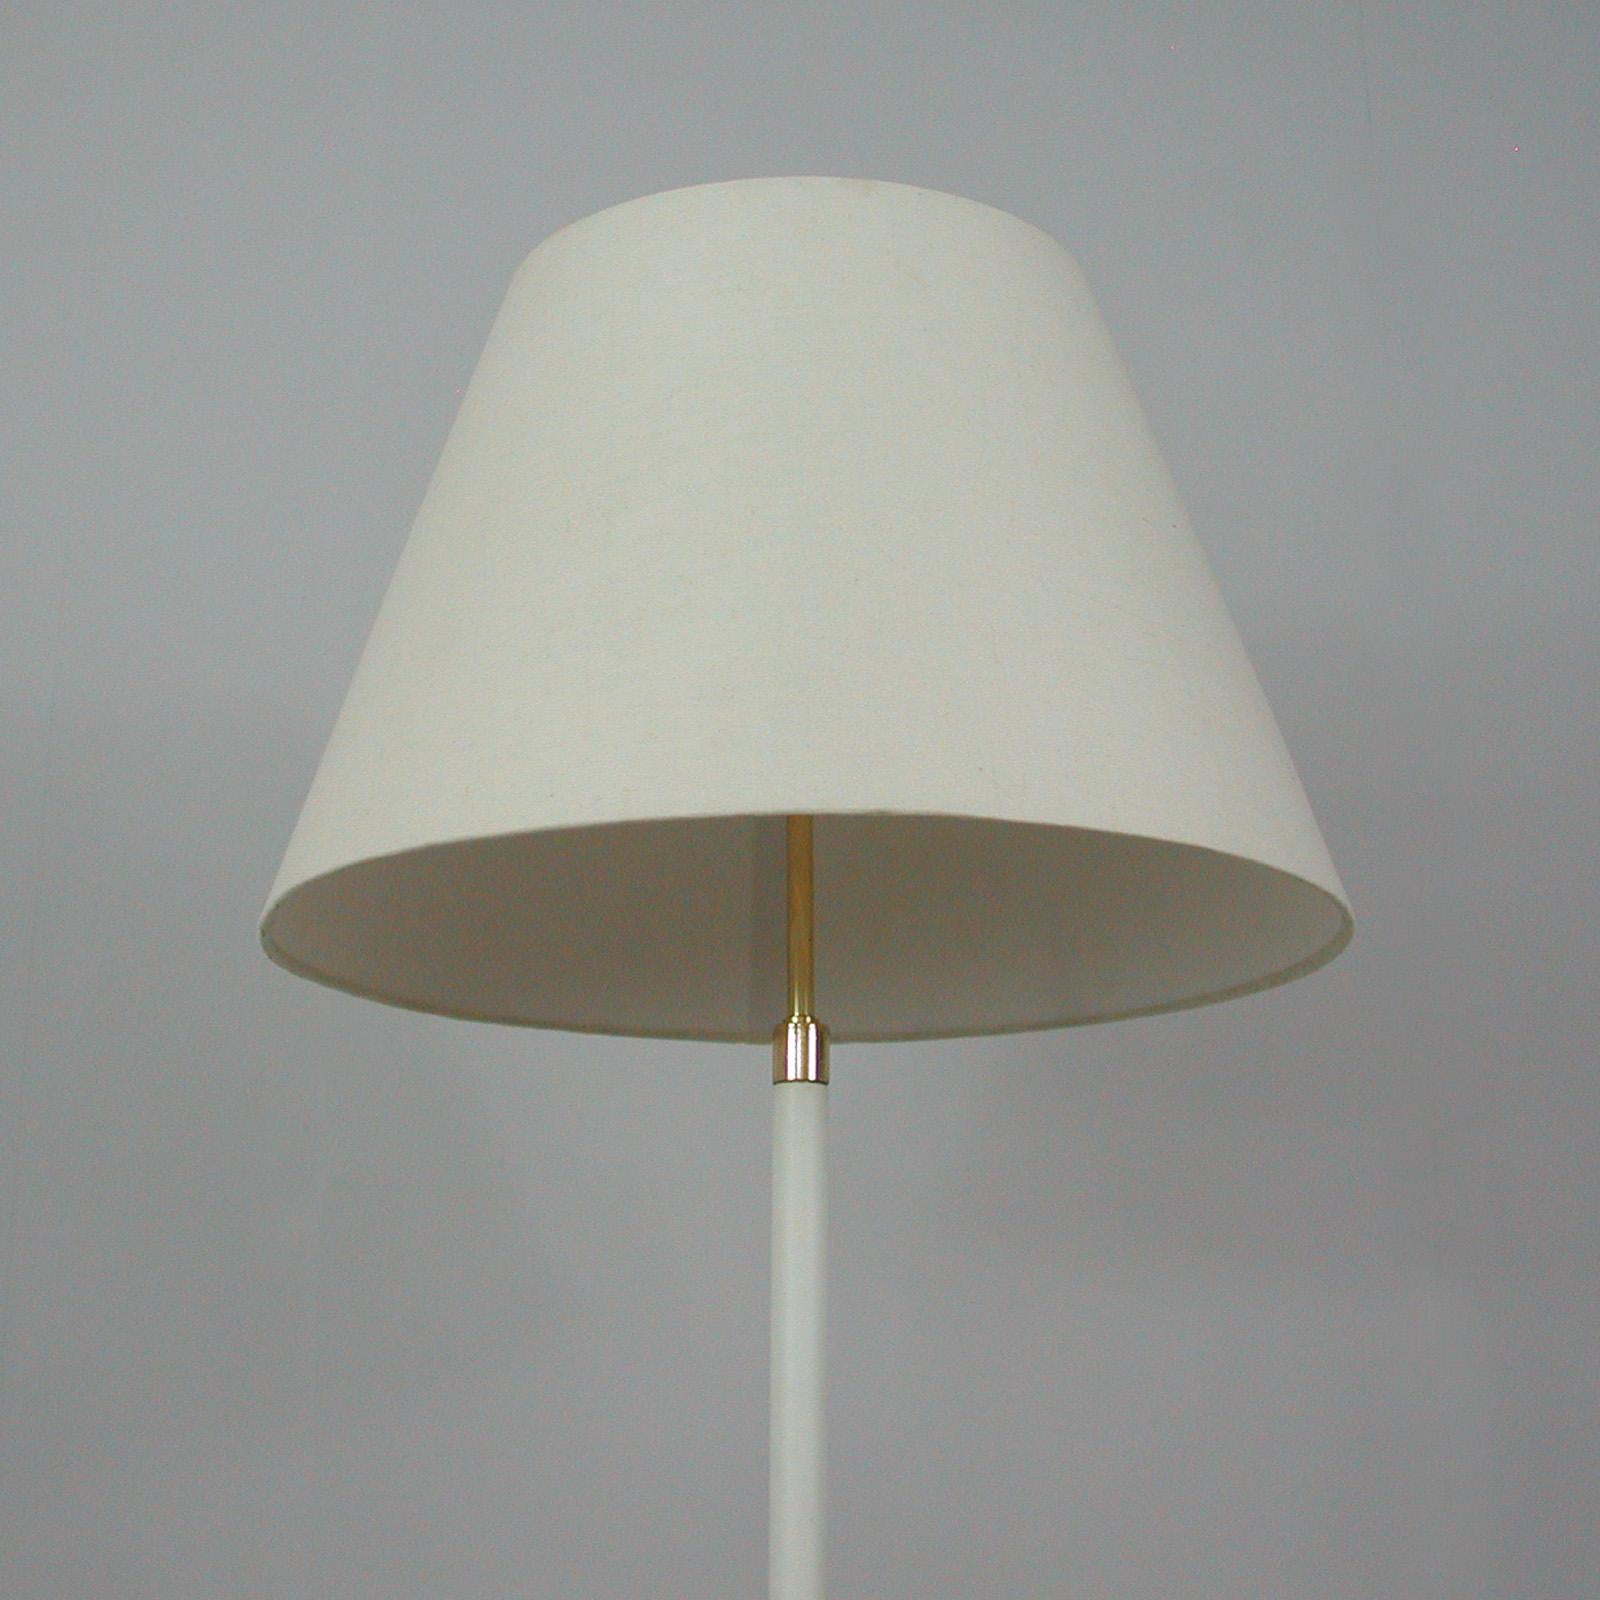 German Midcentury White Leather and Brass Floor Lamp by Vereinigte Werkstätten, 1950s For Sale